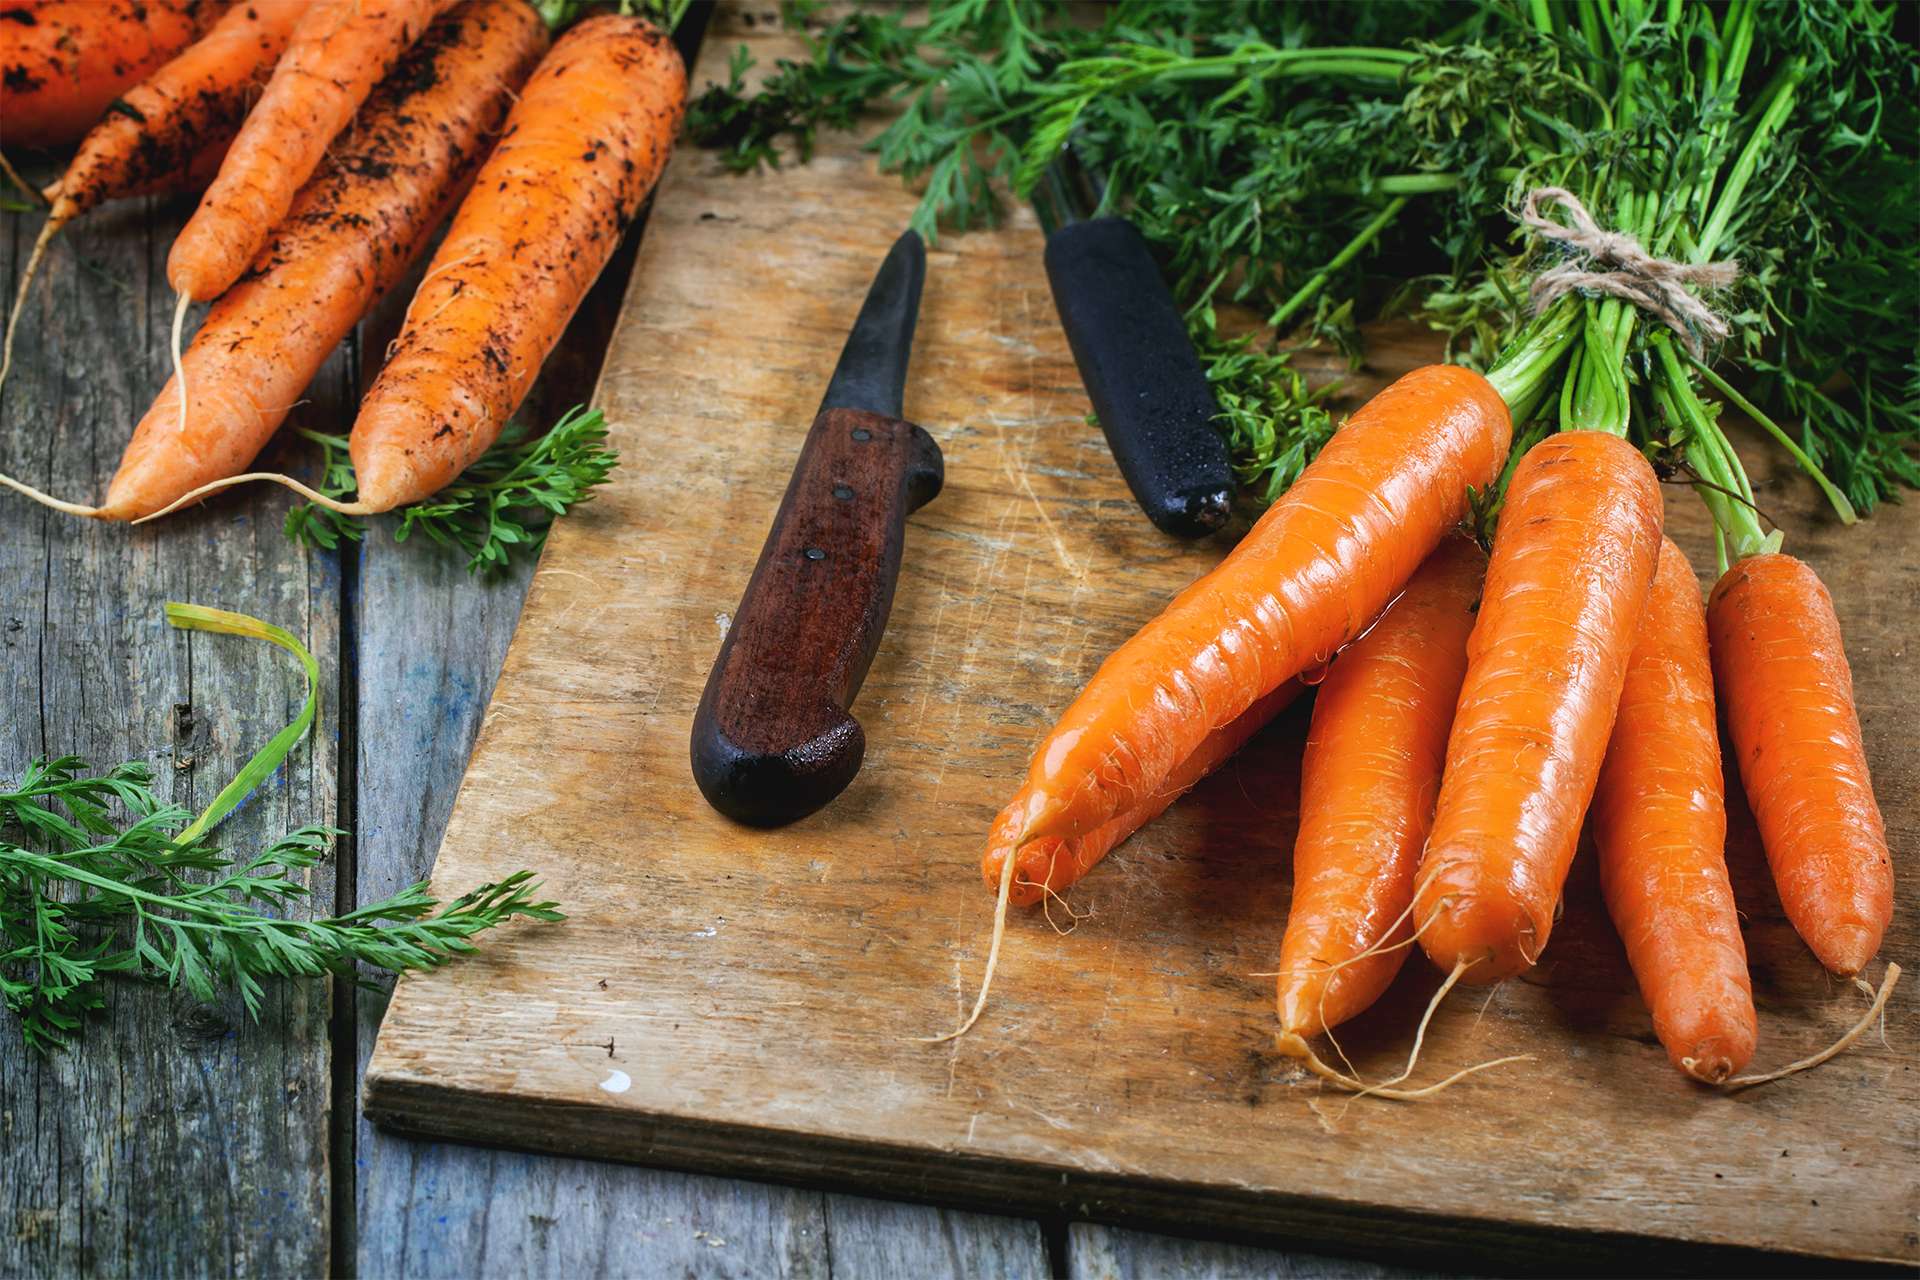 gli alimenti vegetali ricchi di fibre possono migliorare il benessere dell'intestino